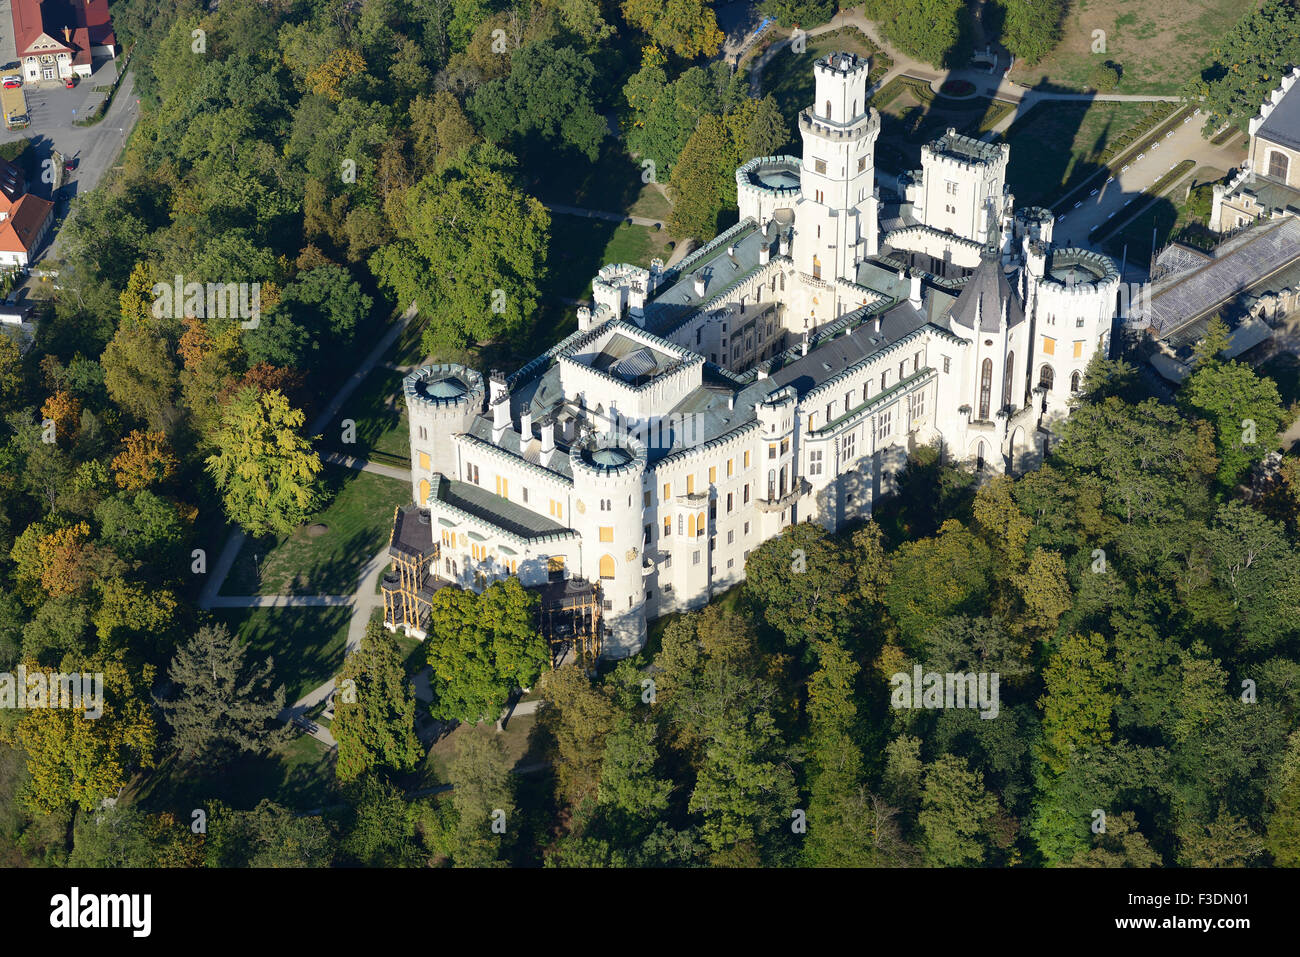 VUE AÉRIENNE.Le château de Hluboká et ses environs de nombreux arbres.Hluboká nad Vltavou, Bohême, République Tchèque. Banque D'Images